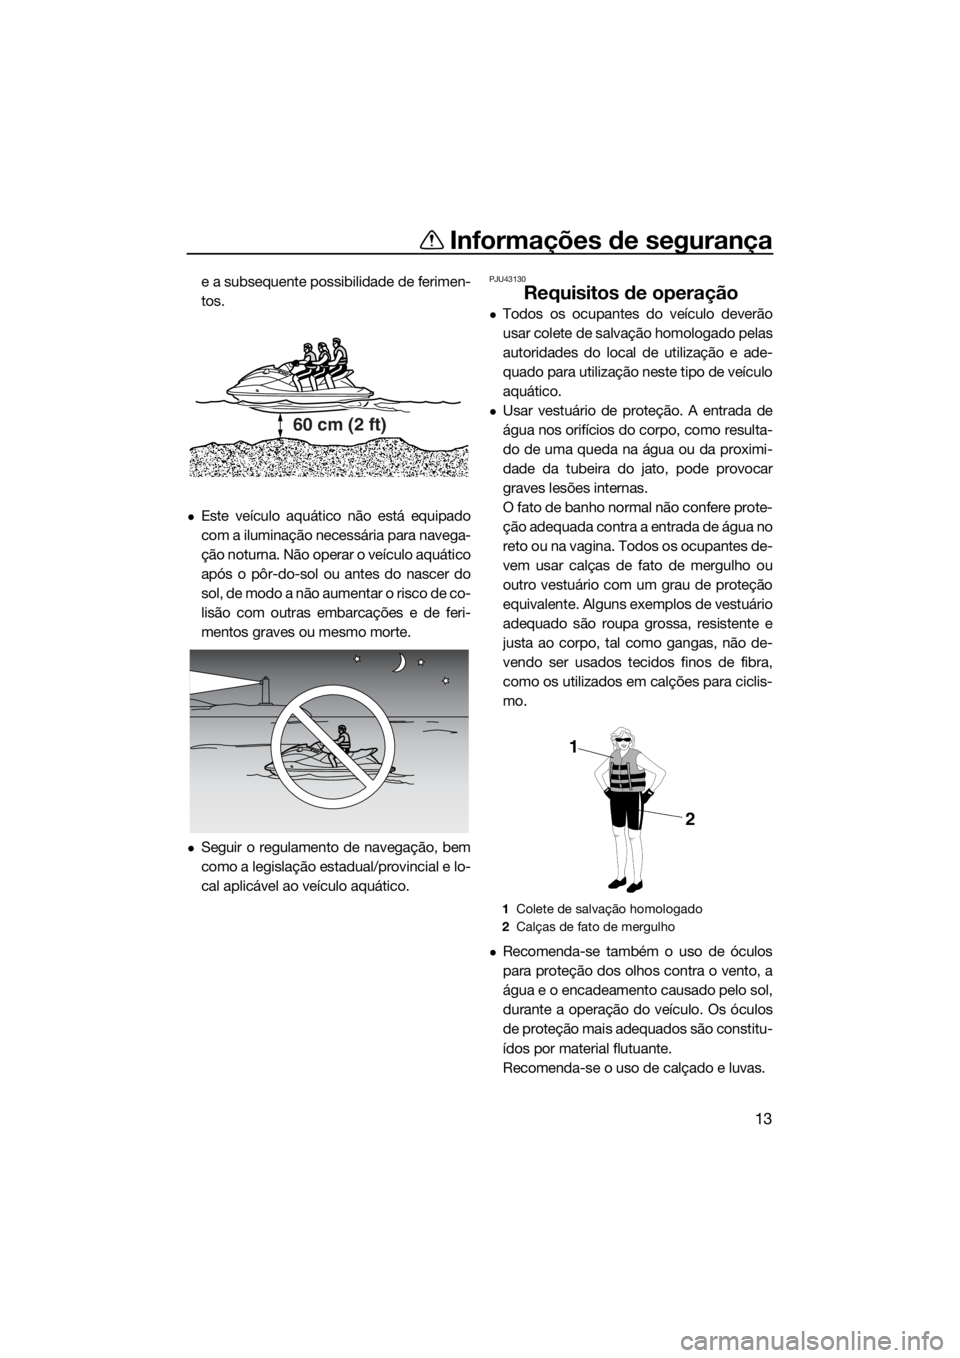 YAMAHA VX-C 2019  Manual de utilização (in Portuguese) Informações de segurança
13
e a subsequente possibilidade de ferimen-
tos.
Este veículo aquático não está equipado
com a iluminação necessária para navega-
ção noturna. Não operar o ve